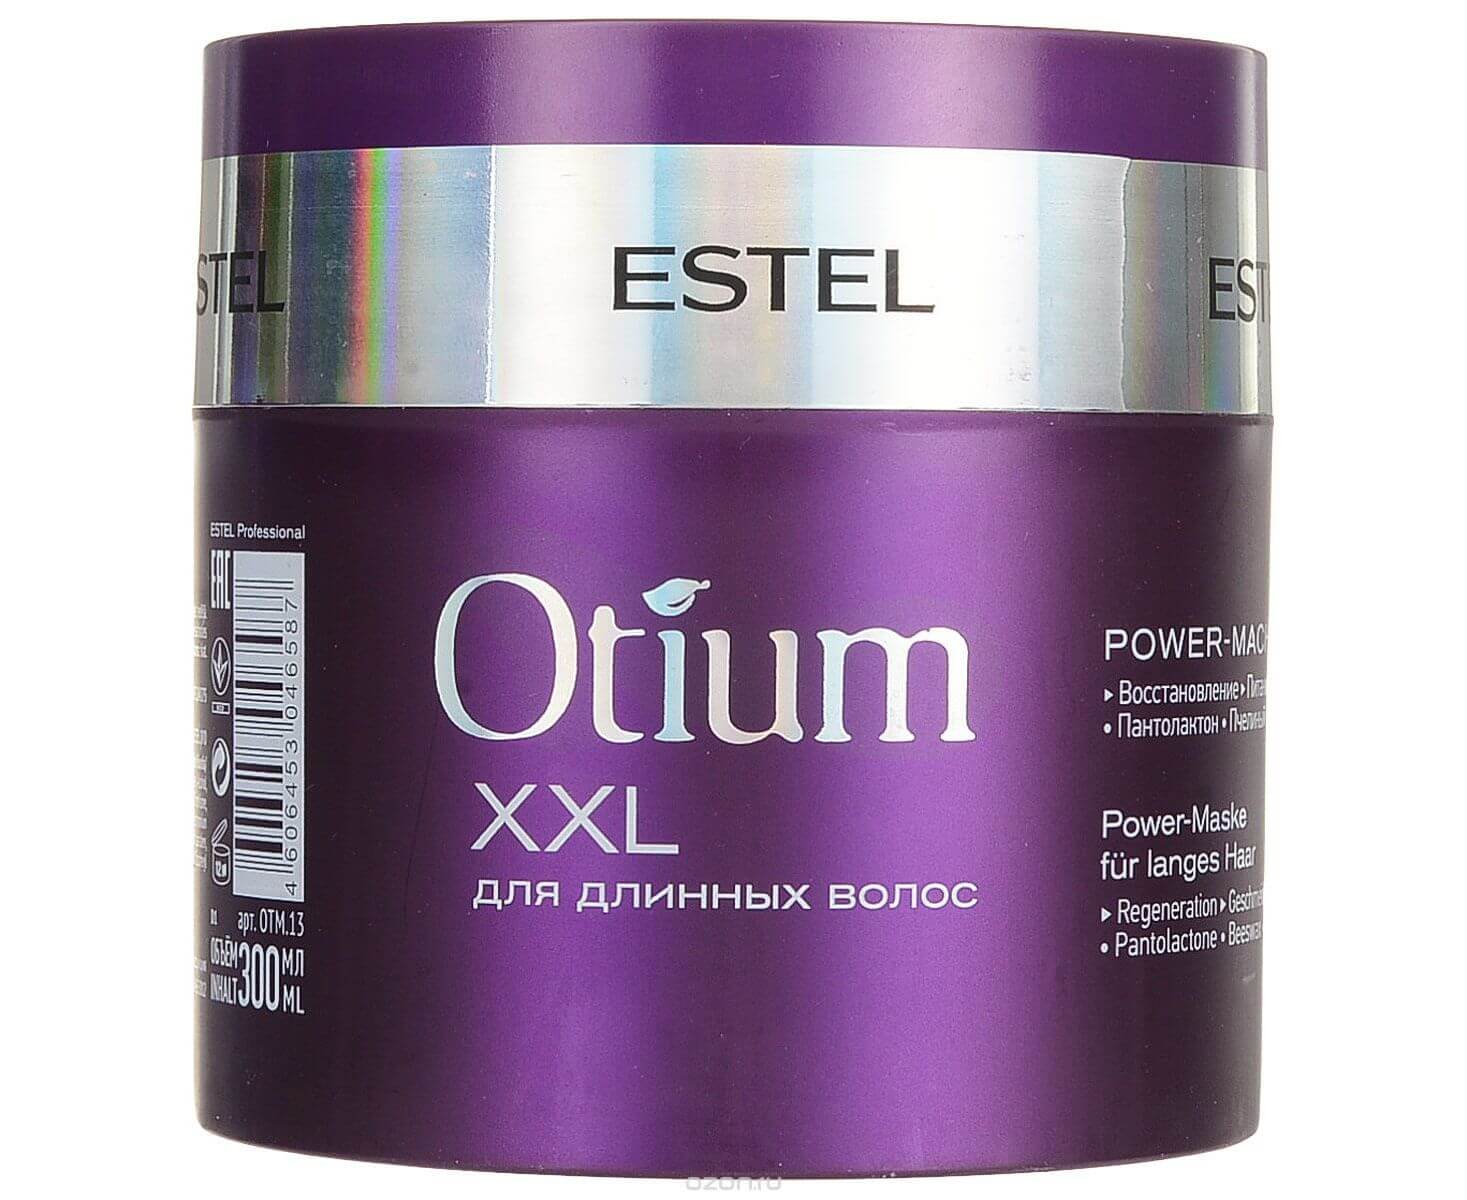 Estel Professional Otium XXL Power